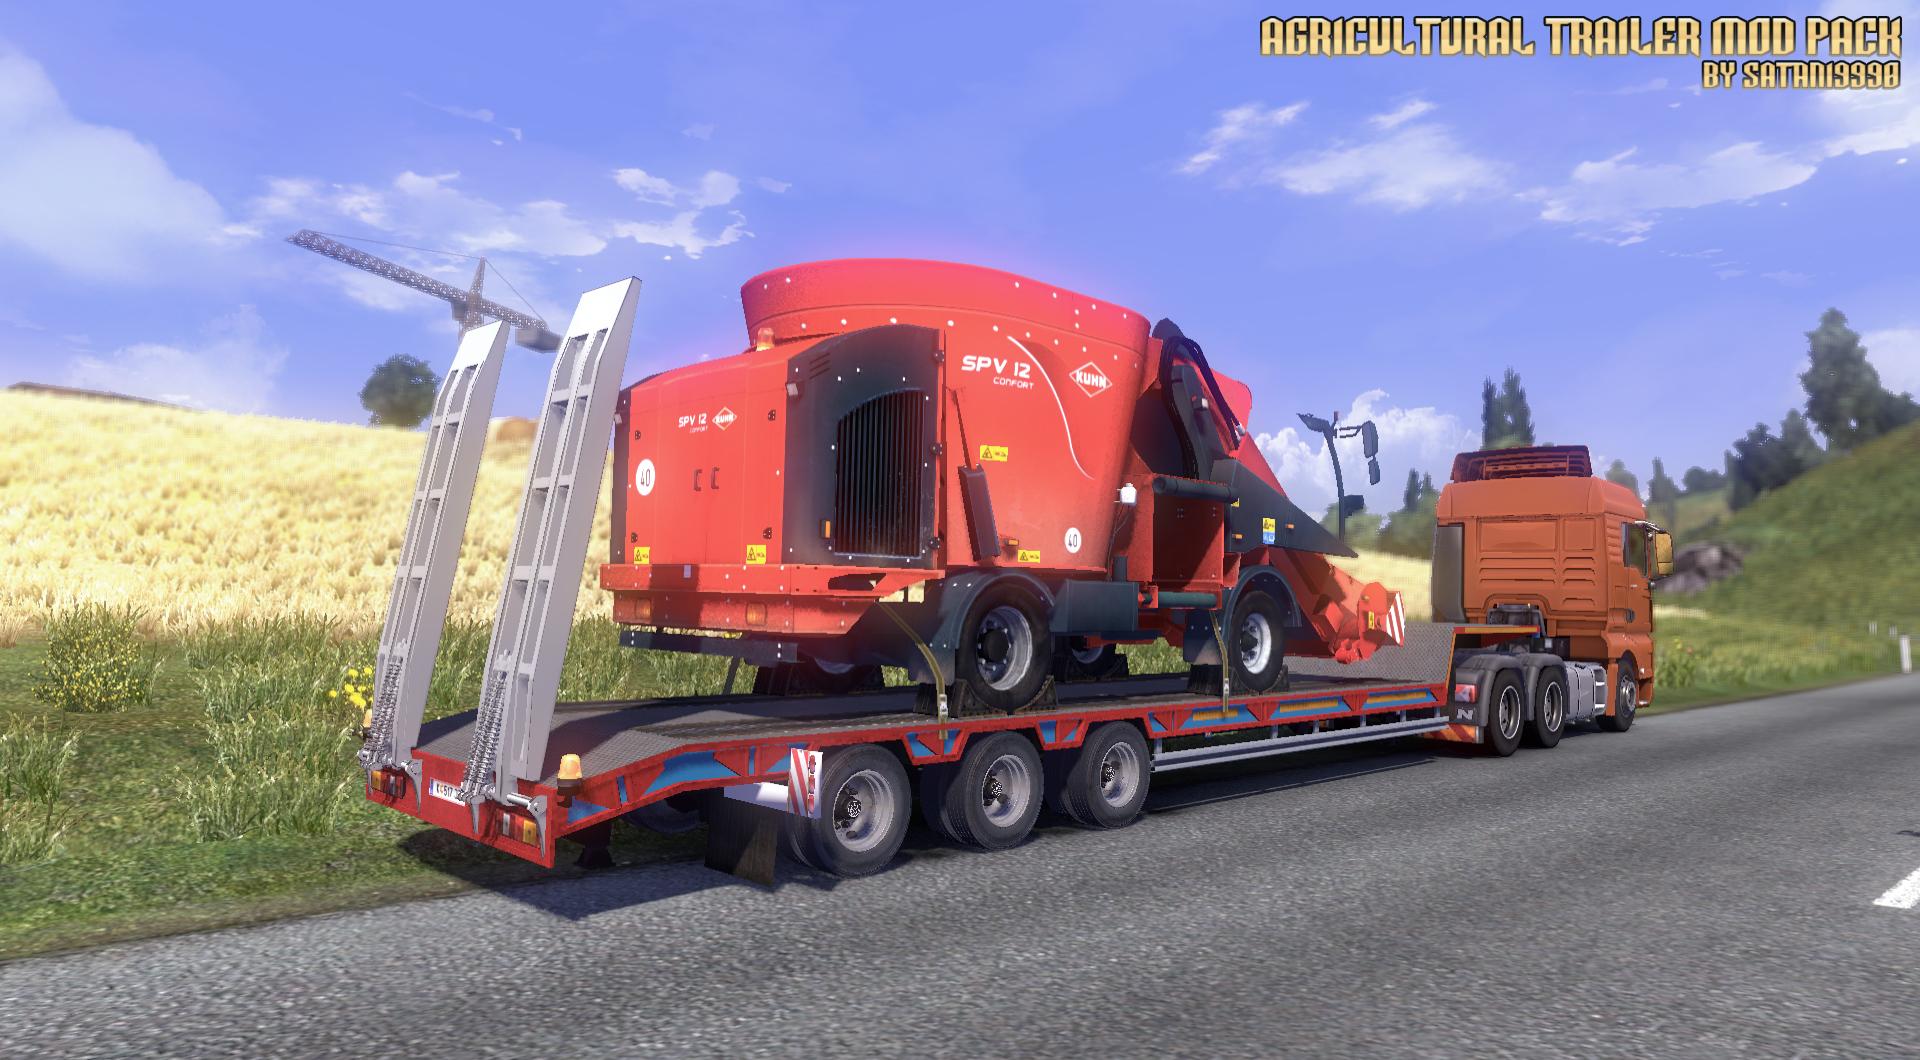 agricultural-trailer-mod-pack-v1-0_3